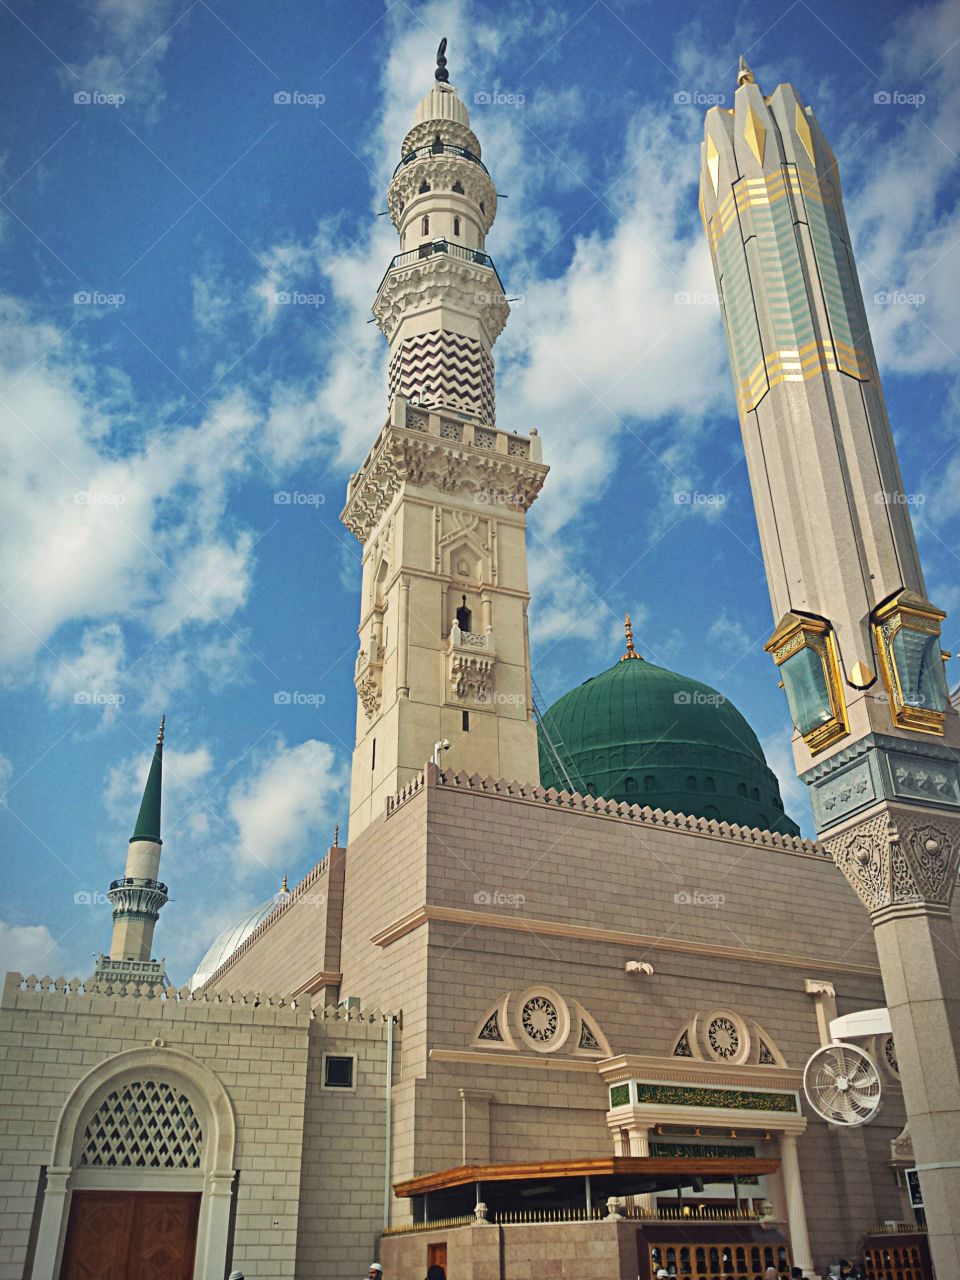 المسجد النبوي. المدينة المنورة. السعودية 
Al masjid al nabawi,  al madina , Saudi Arabia